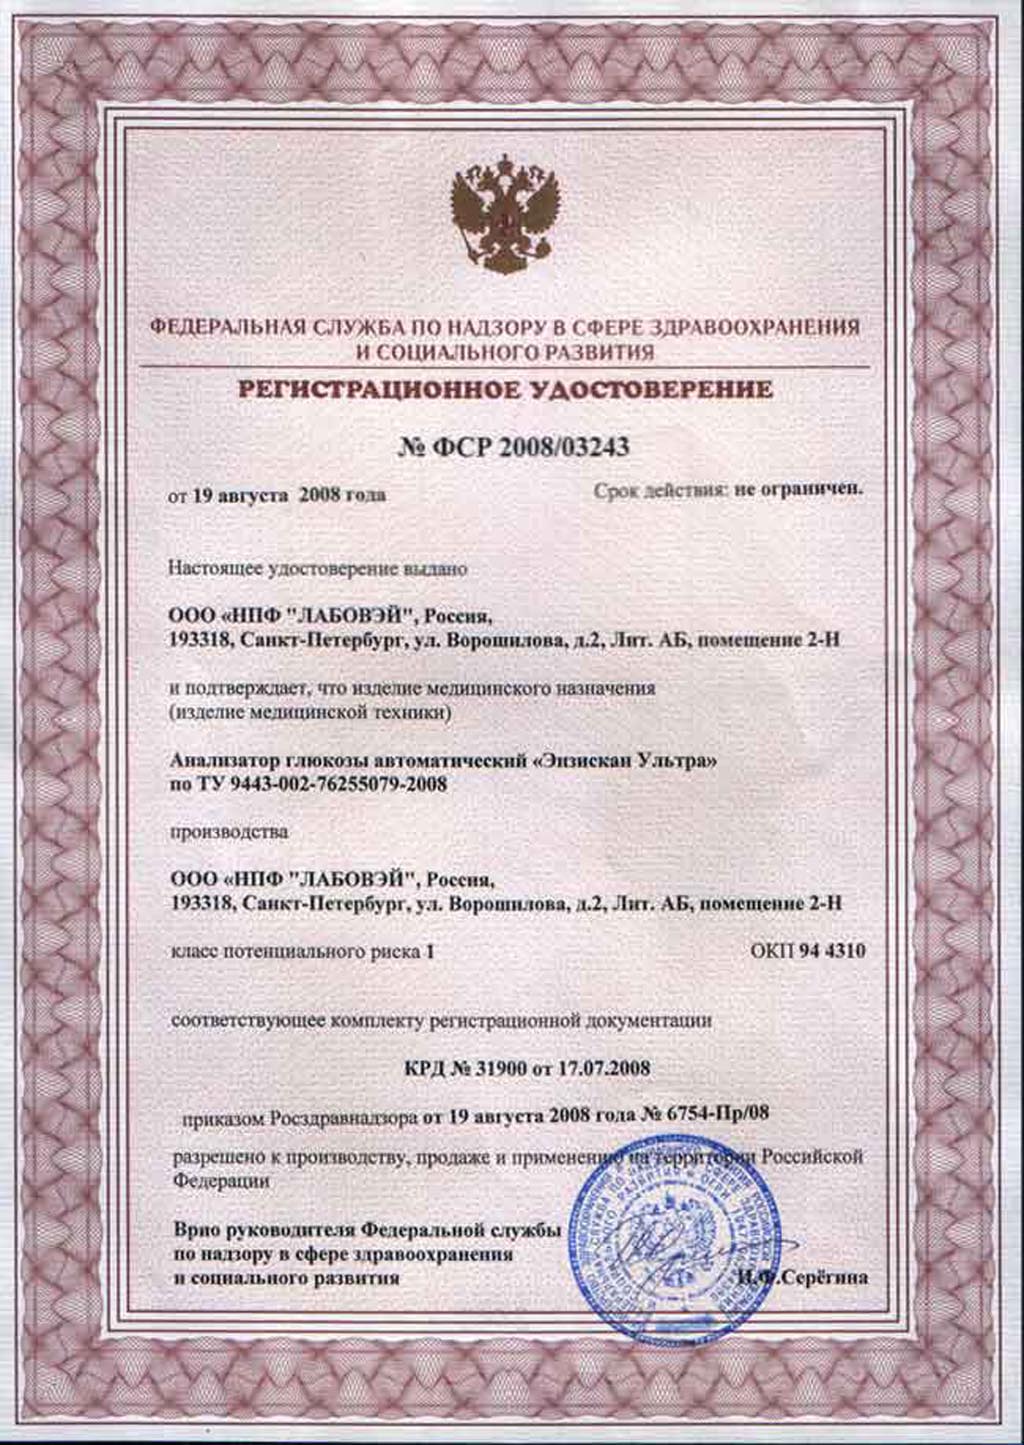 сертификат Энзискан Ультра анализатор глюкозы